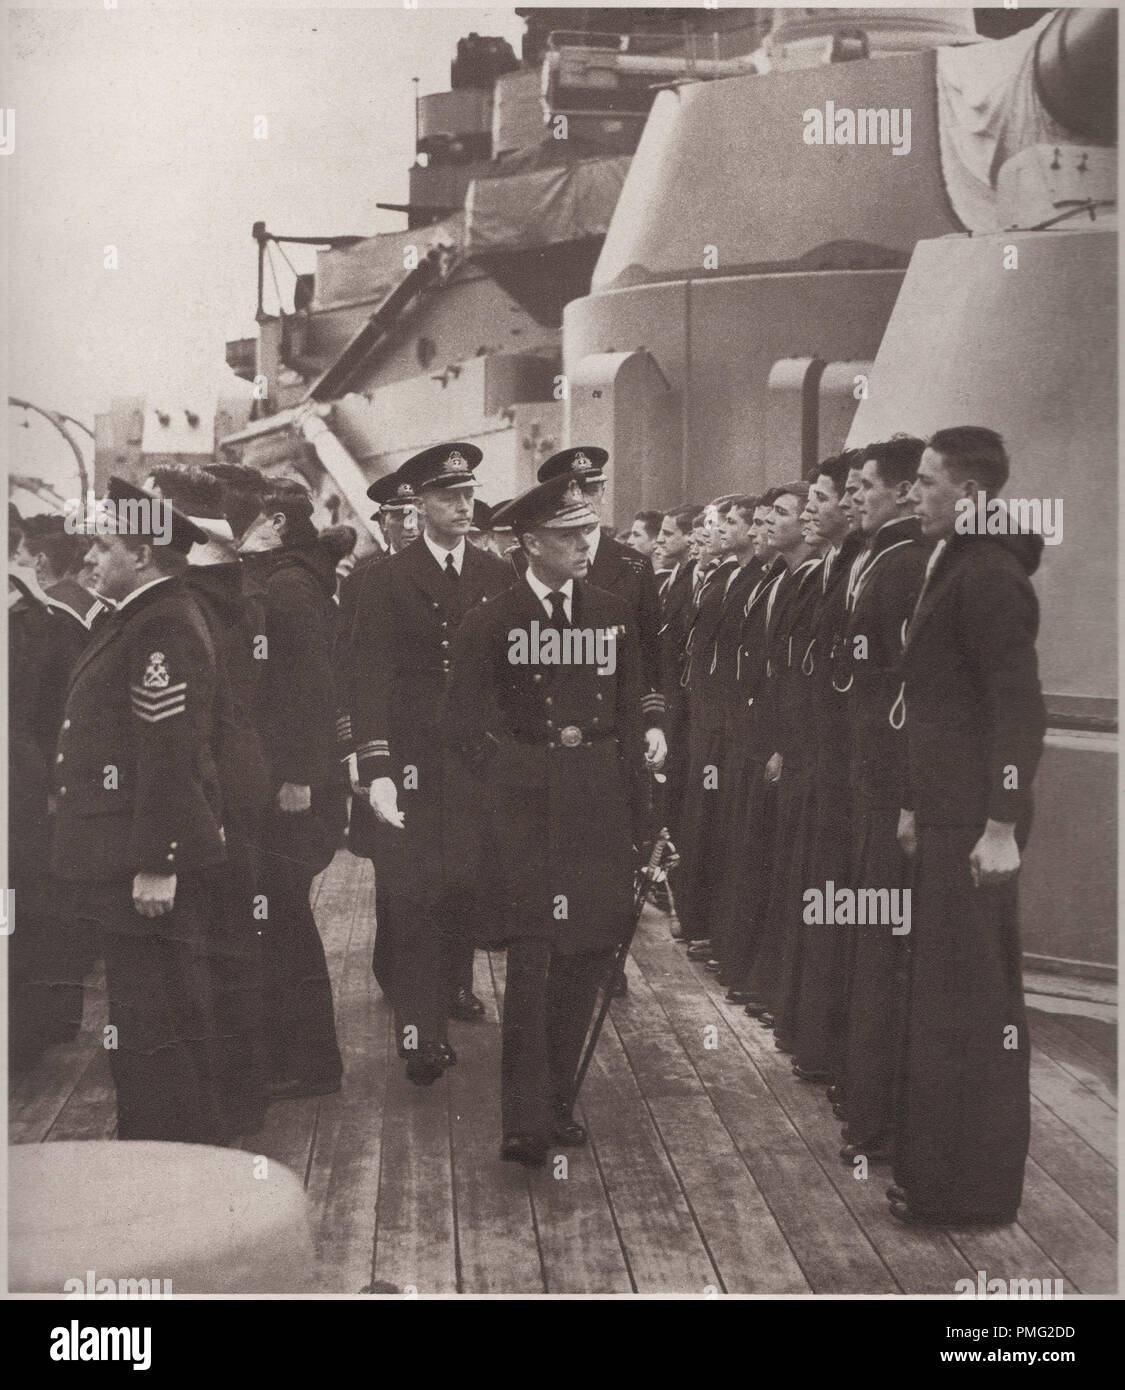 Edward der Achte im Jahr 1936 Überprüfung der Mitglieder der Besatzung an Bord der HMS Royal Oak in der Royal Navy, die später von U-47 versenkt wurde, am 14. Oktober 1939 in Scapa Flow. Edward VIII. Später dankte den Thron nach Wallis Simpson die Amerikanische geschiedene socialite zu heiraten Stockfoto